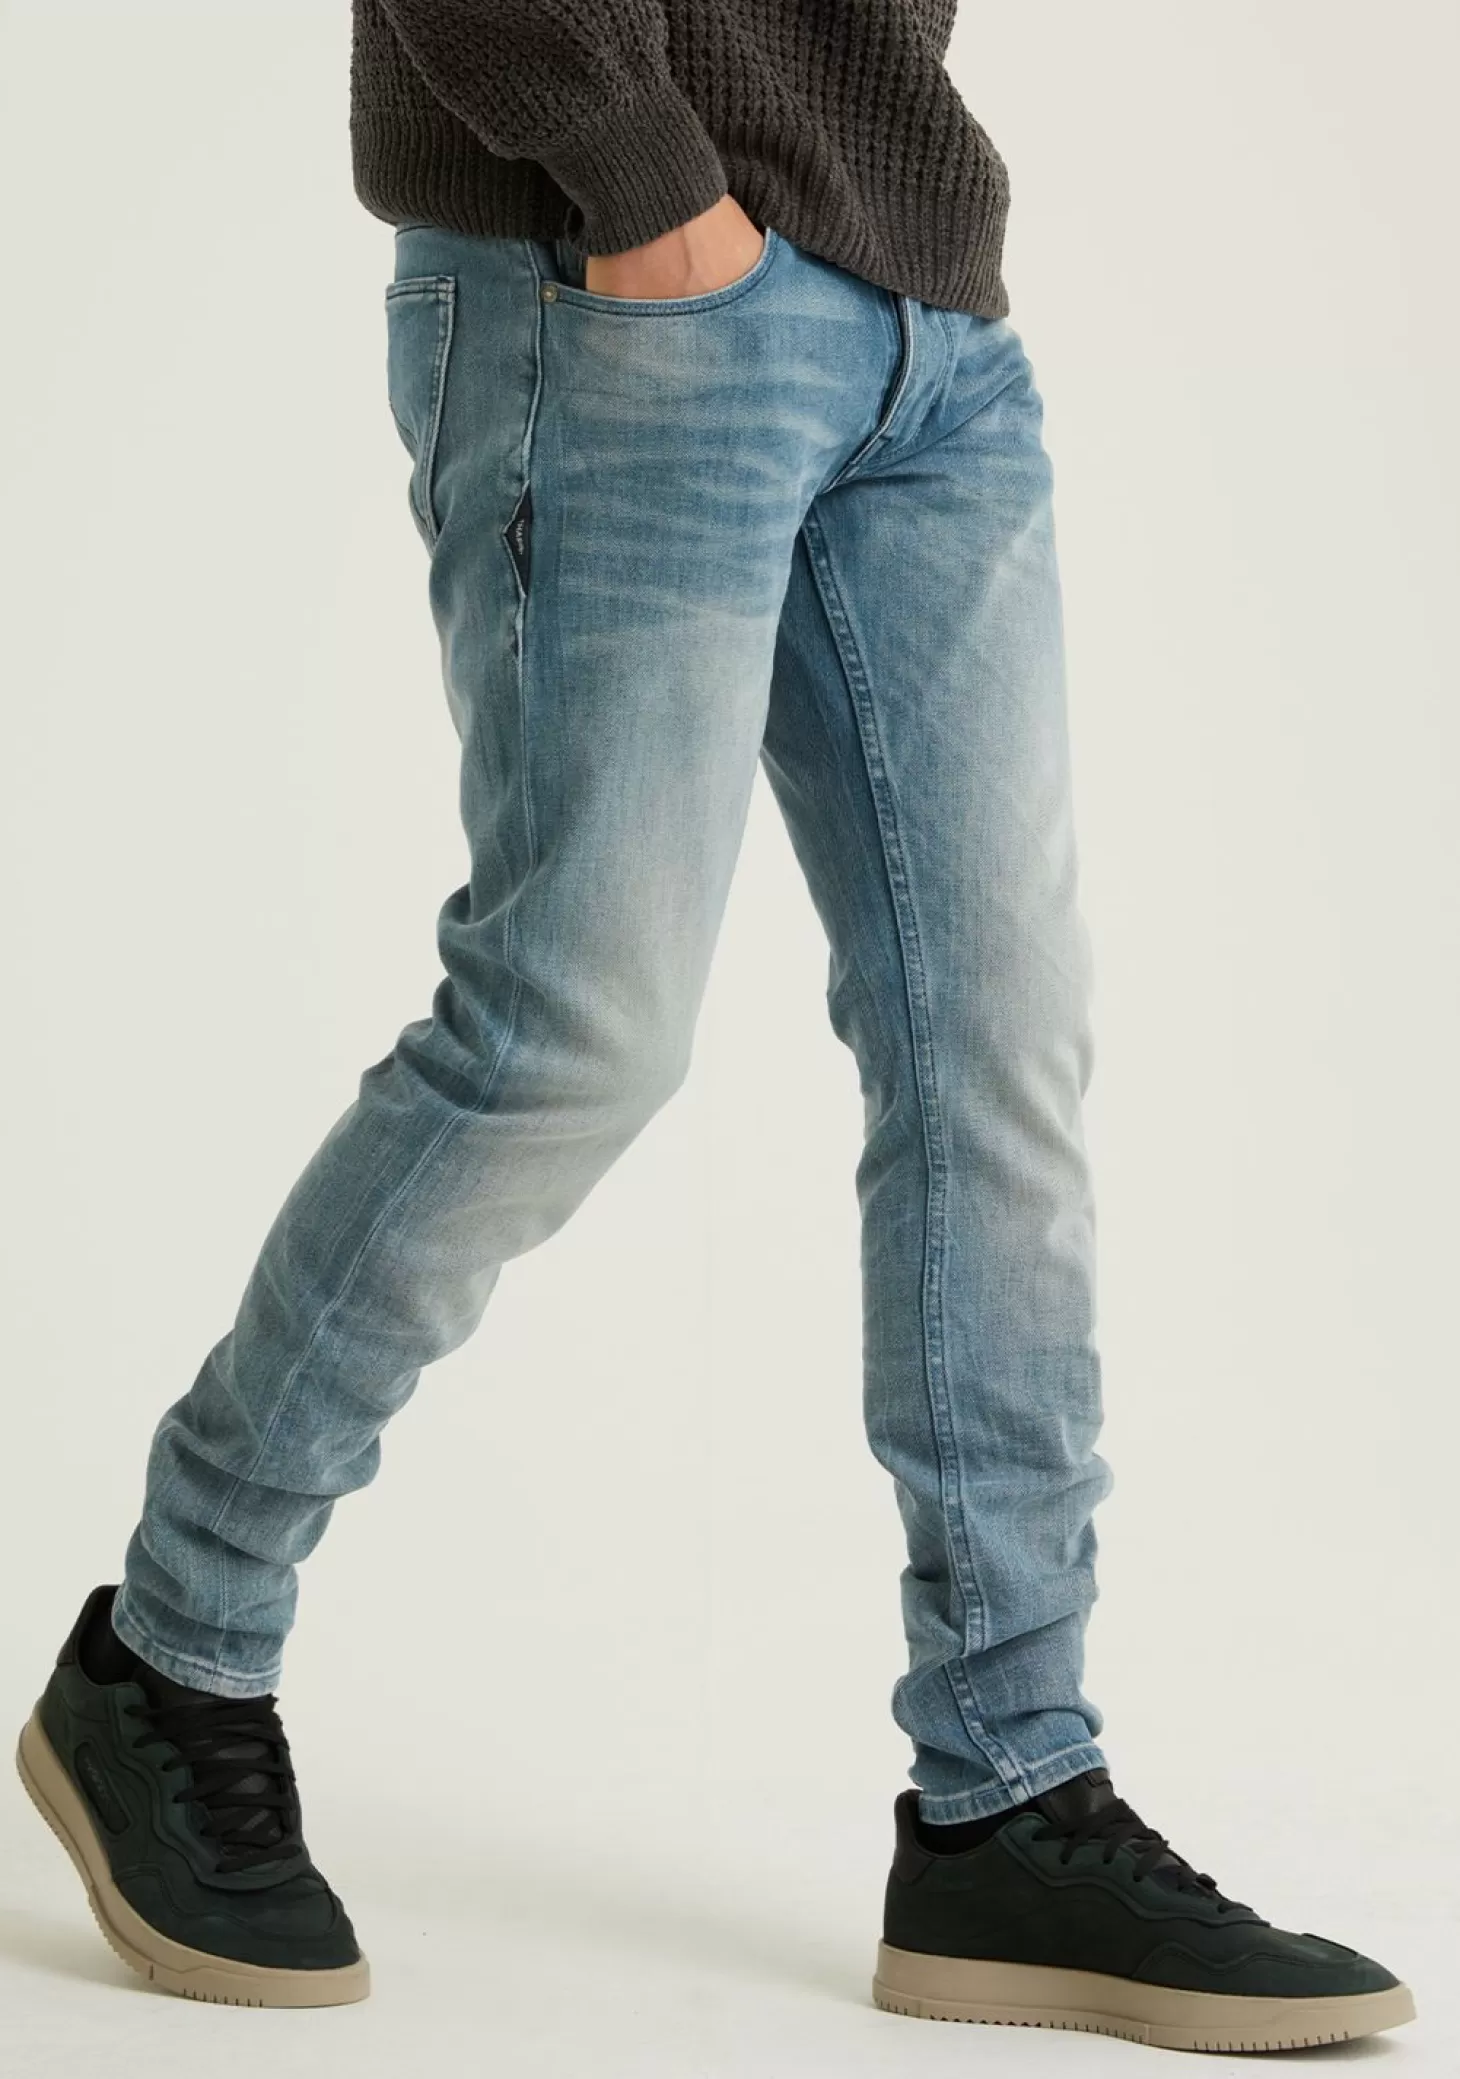 CHASIN' Jeans | Blue Jeans*EGO Kian Jeans - Chasin' EN